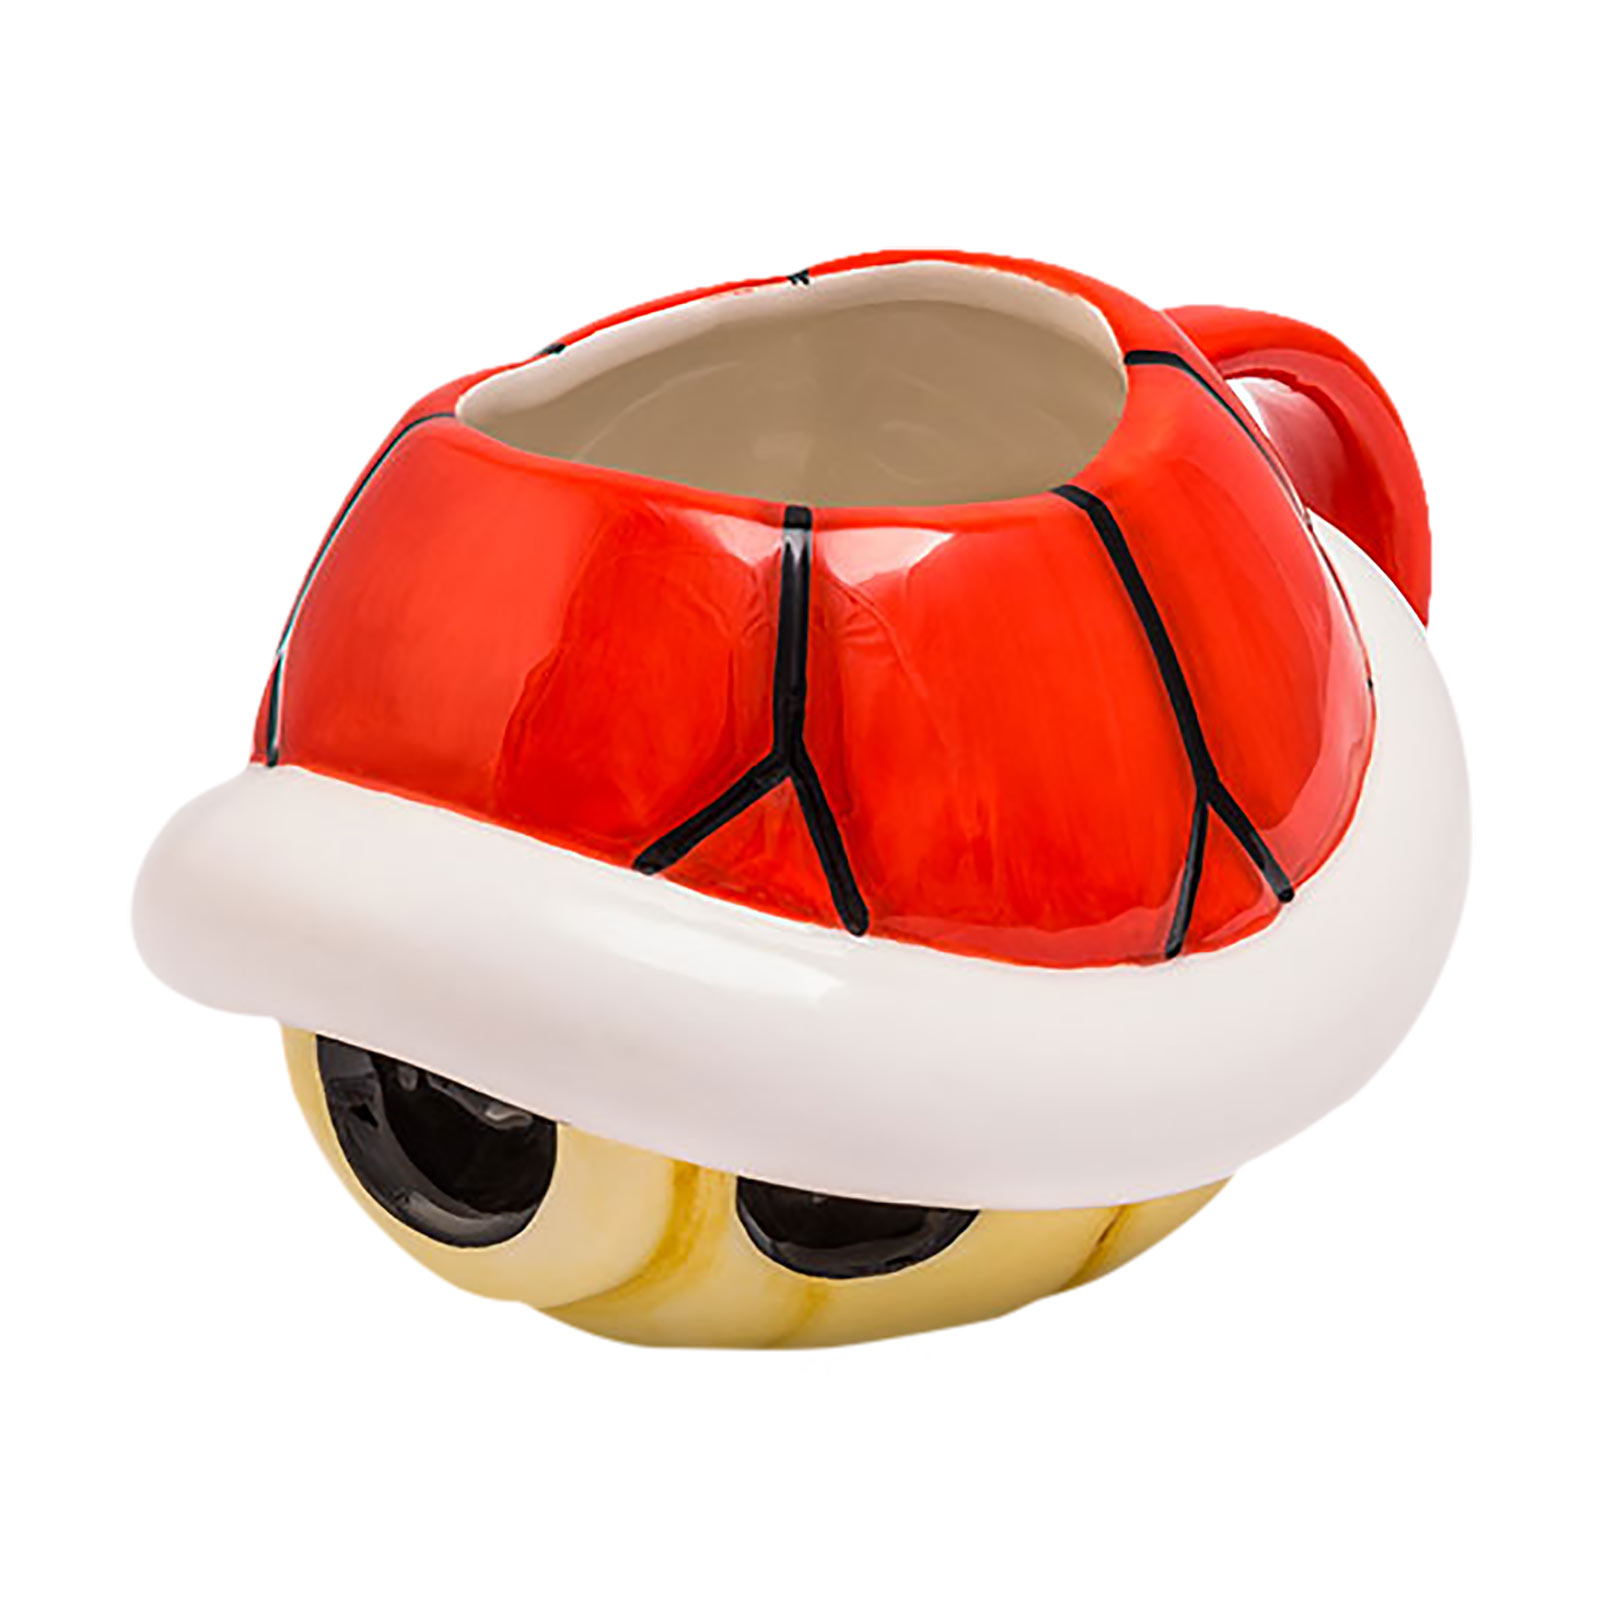 Super Mario - Koopa 3D Mok